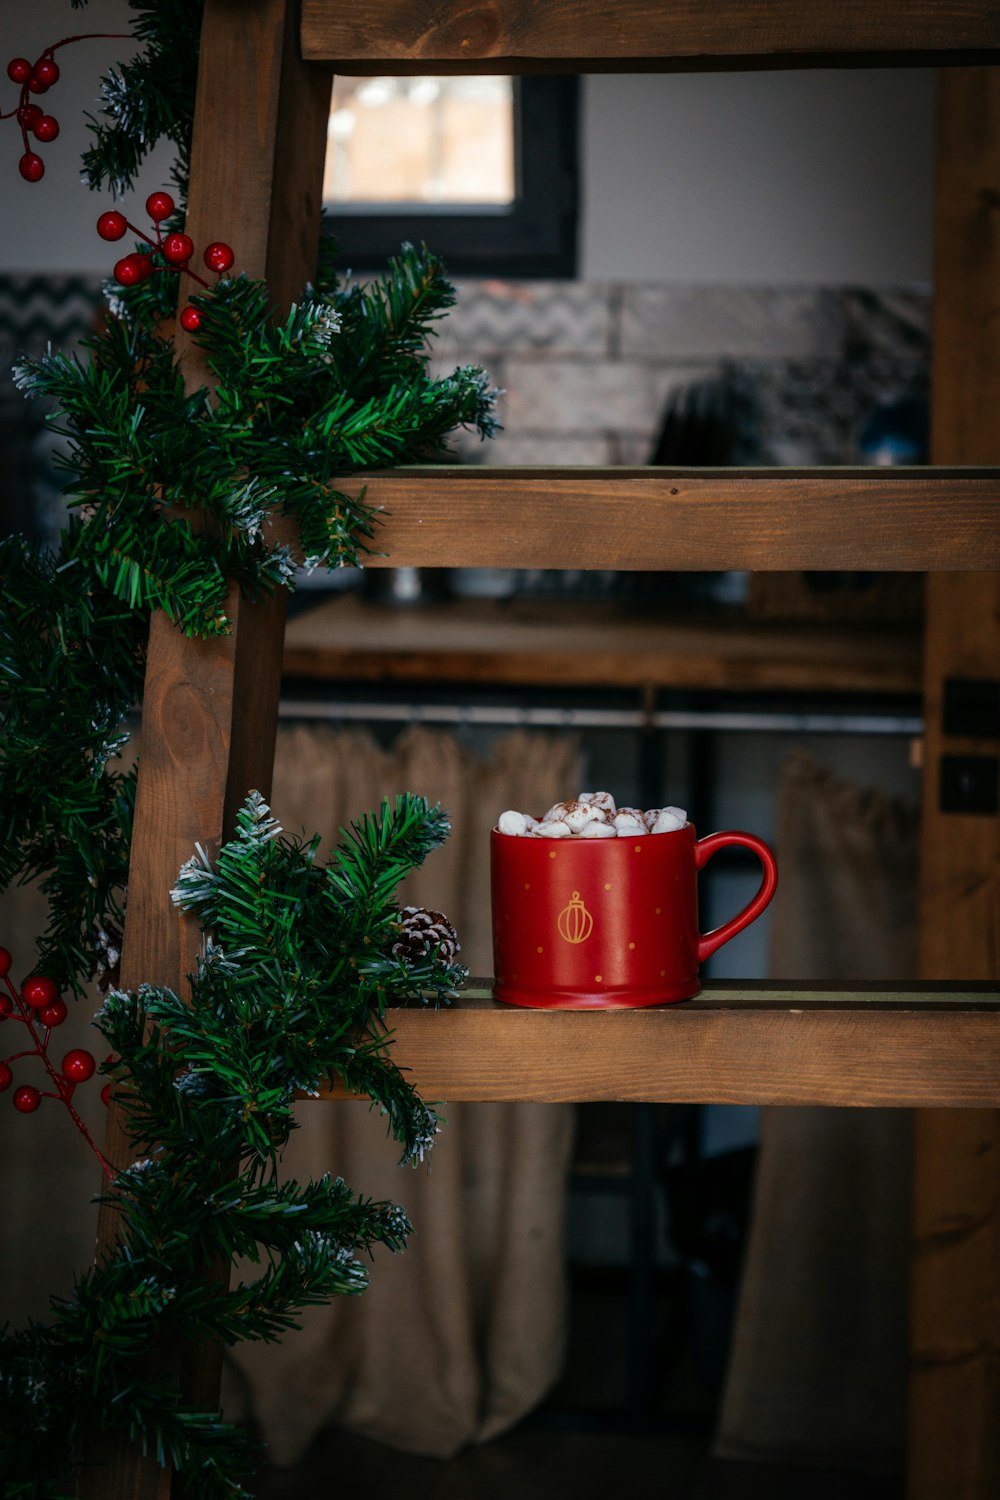 une tasse de café rouge posée sur une étagère en bois